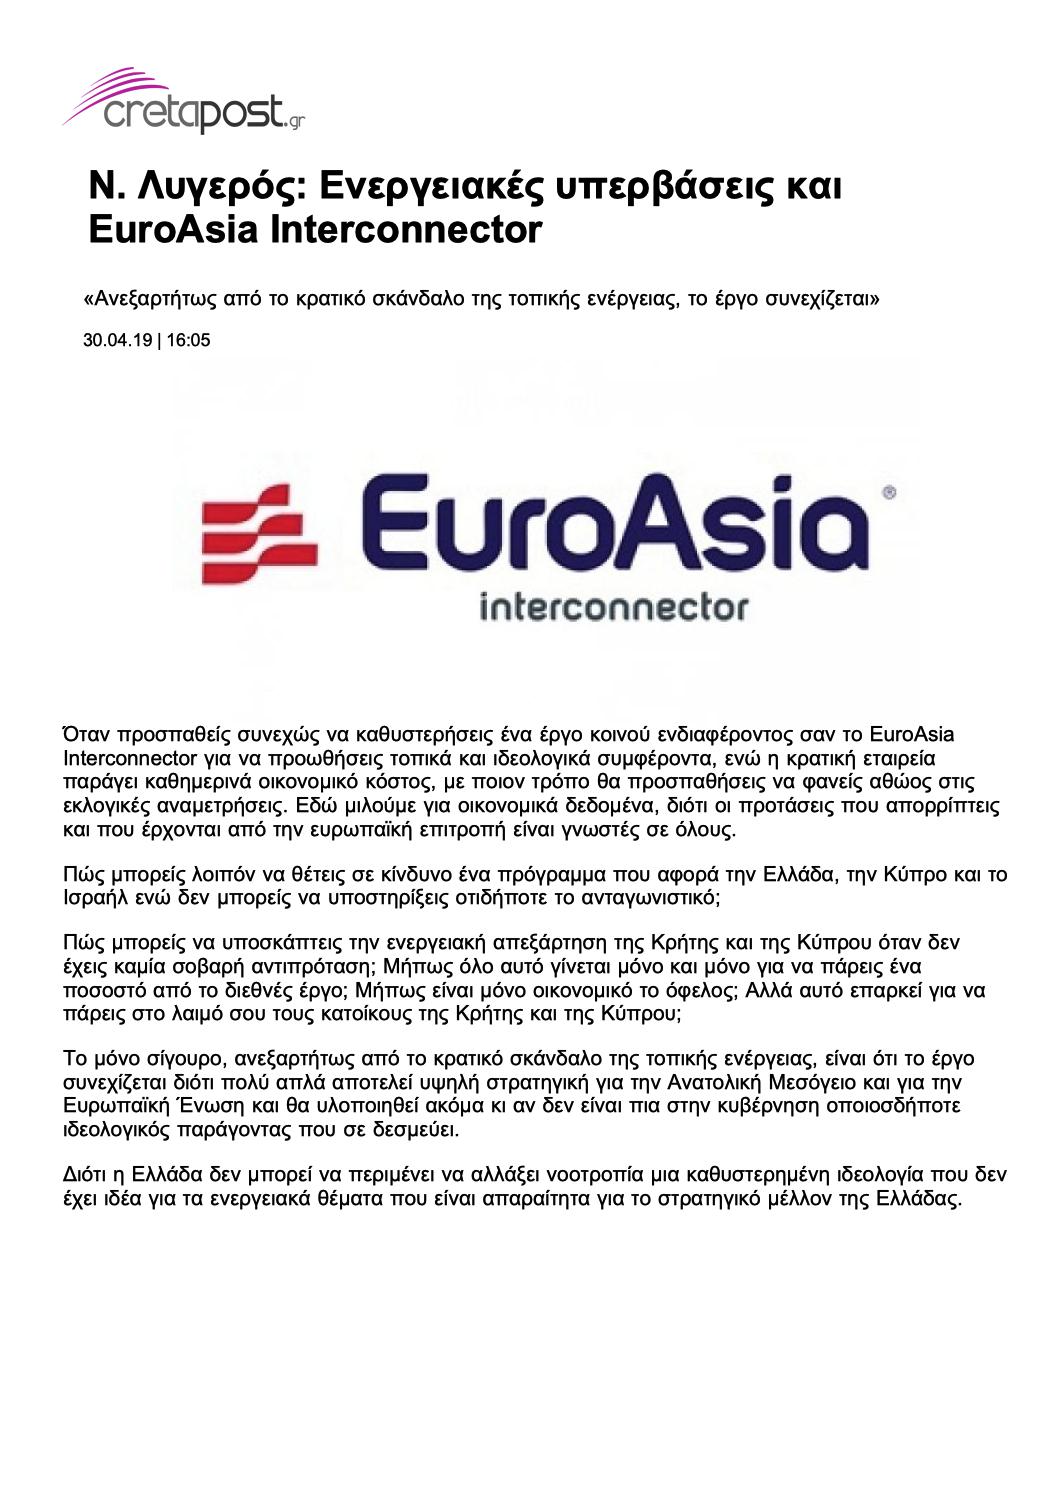 Ενεργειακές υπερβάσεις και EuroAsia Interconnectior, cretapost, 30/04/2019 - Publication